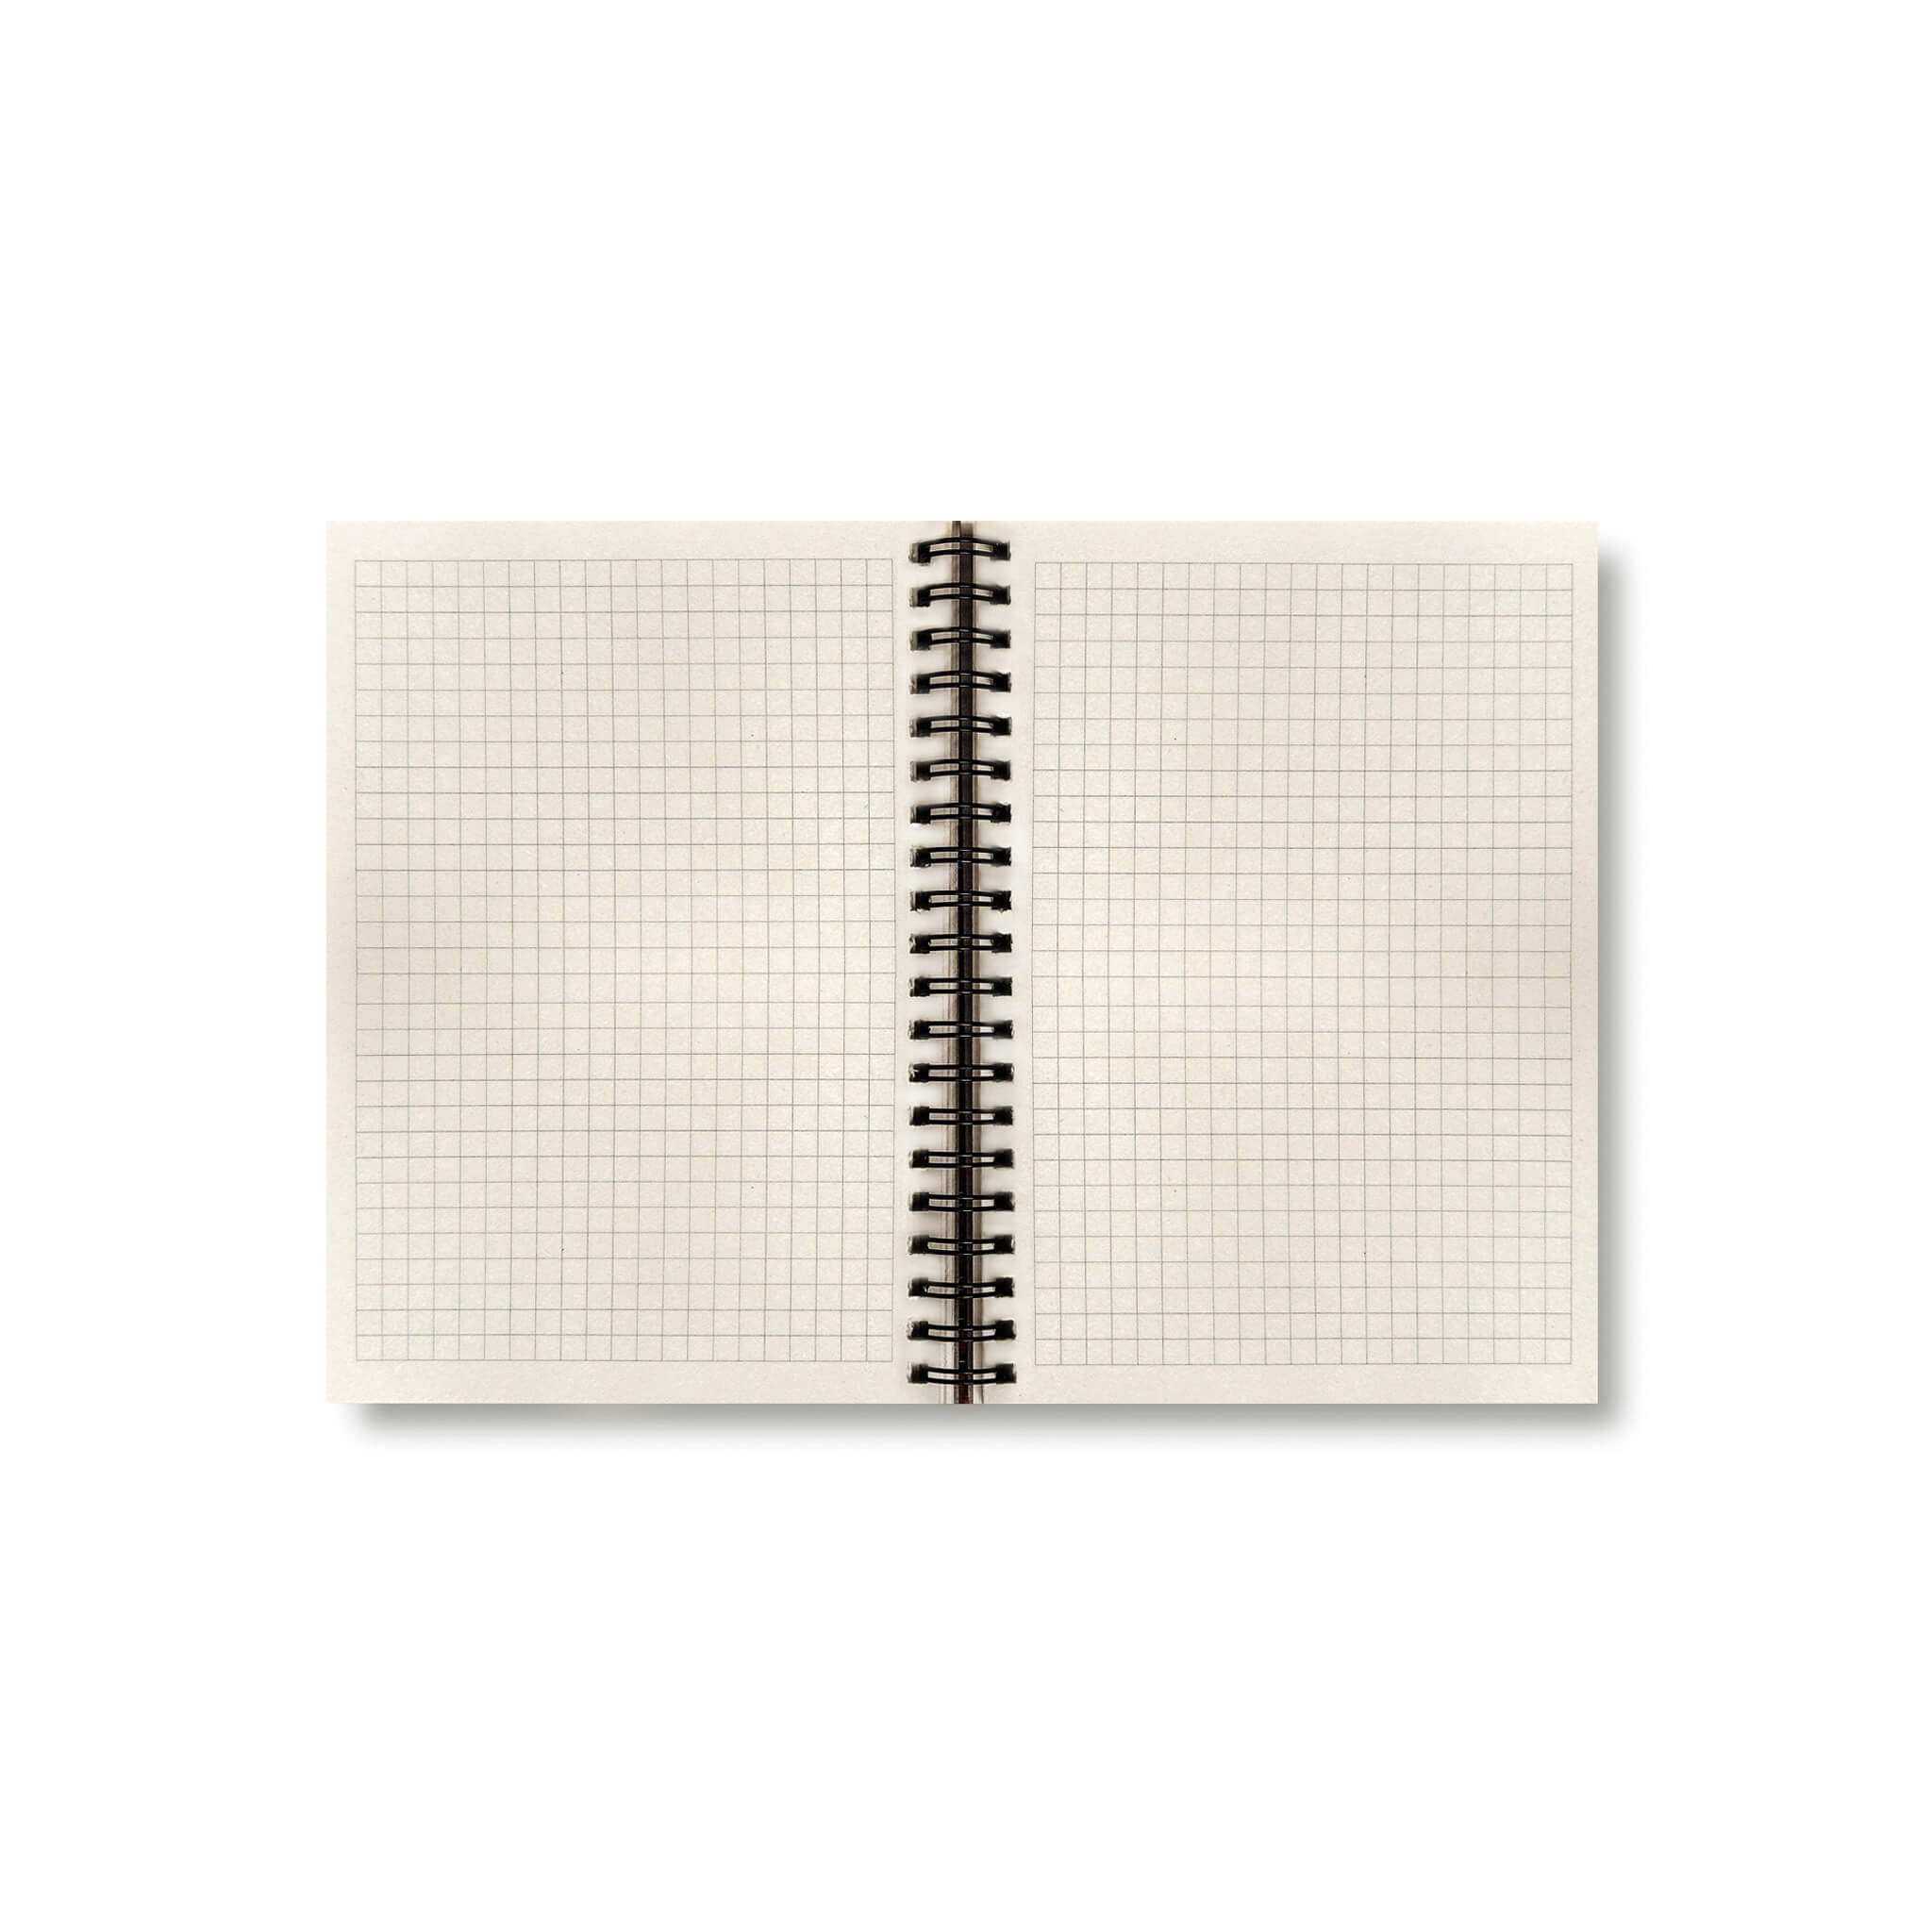 BOBO Zápisník, B6, čtverečkovaný, hnědý